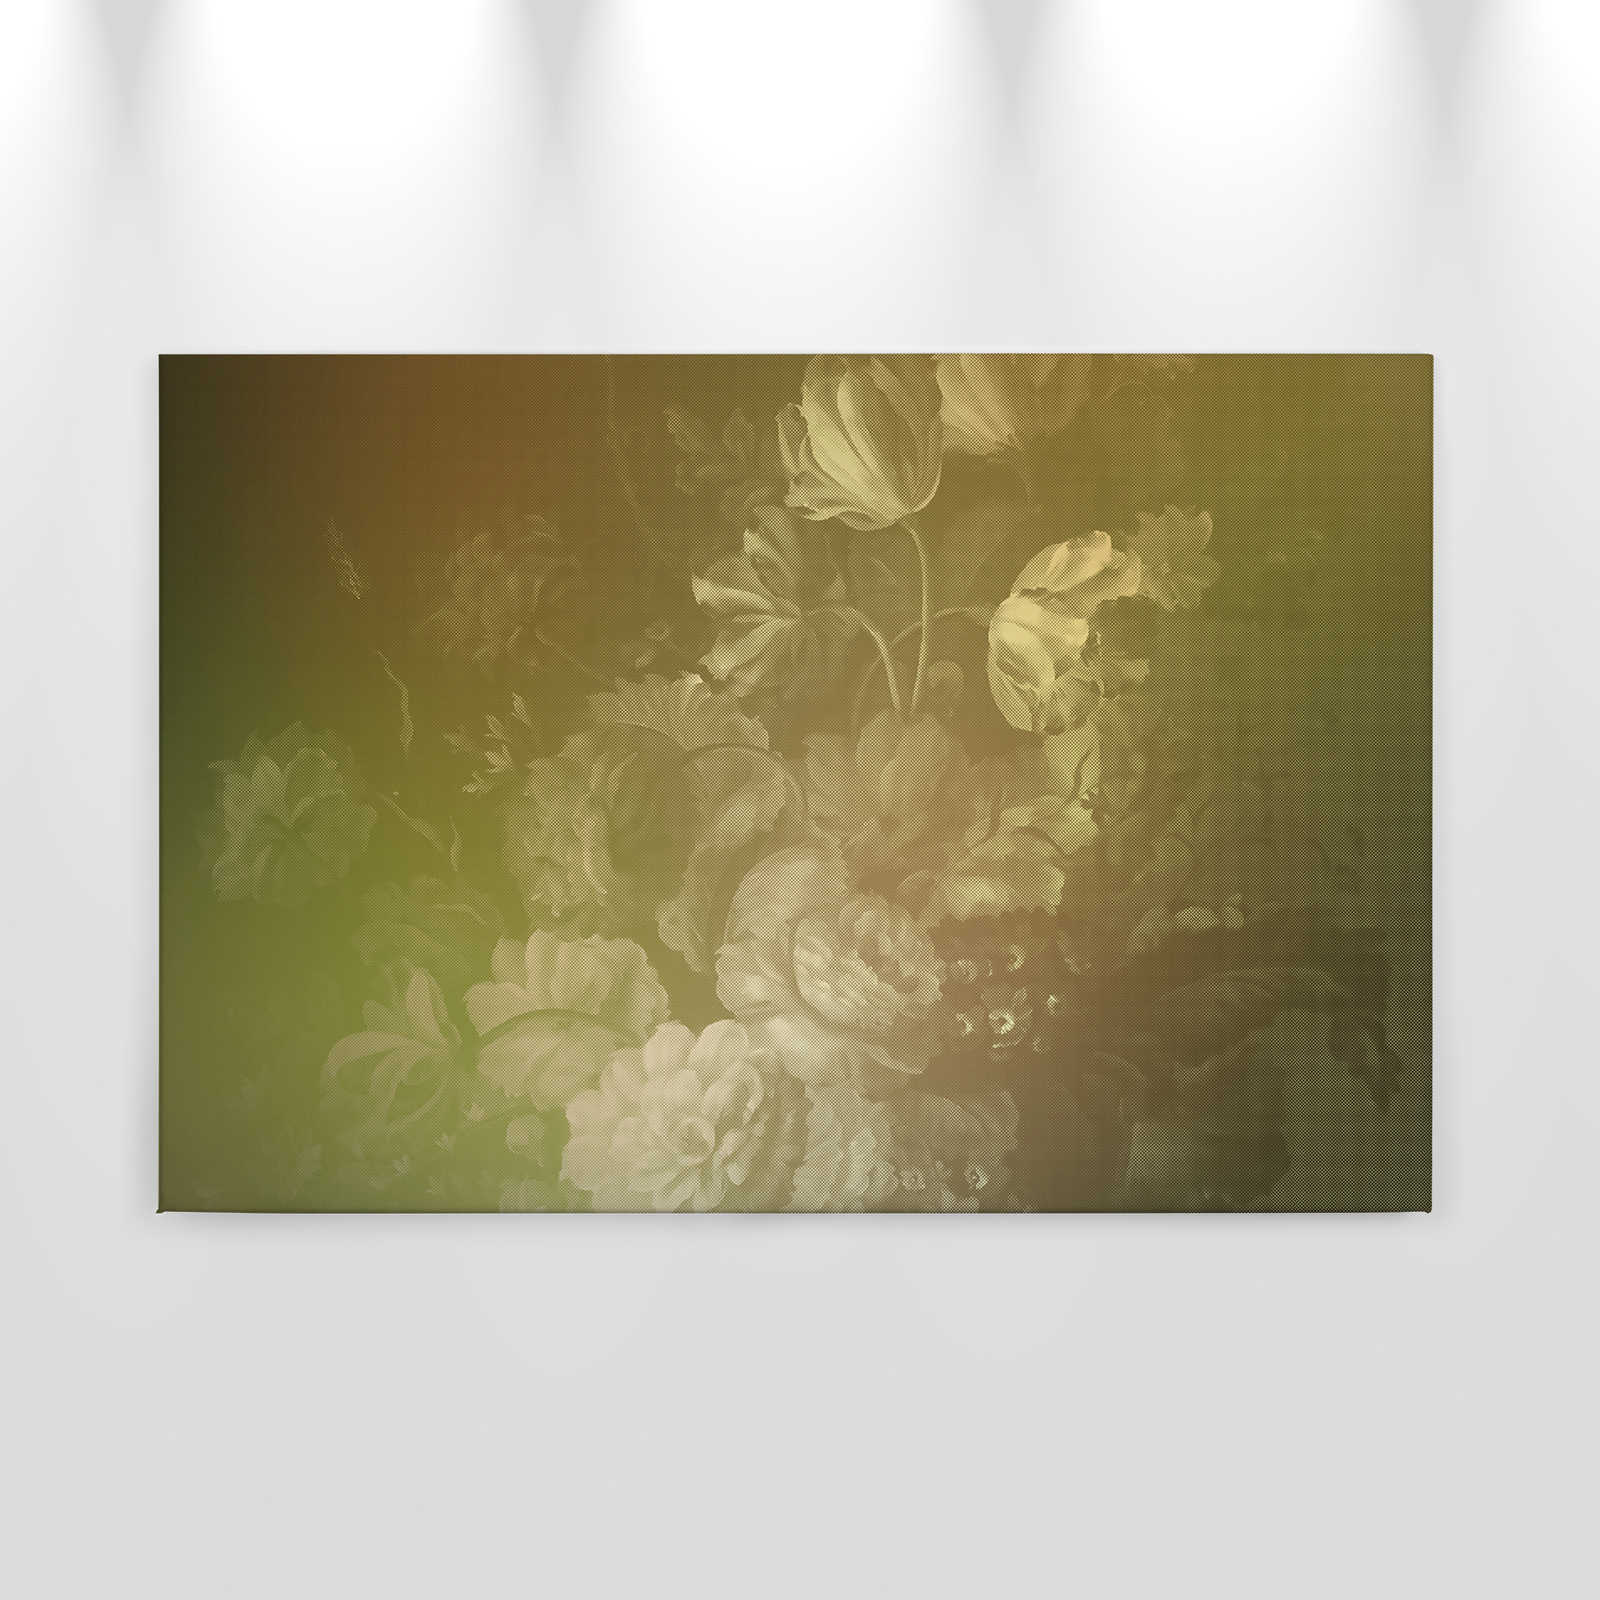             Pastello olandese 2 - Quadro su tela con bouquet di rose in stile olandese - 0,90 m x 0,60 m
        